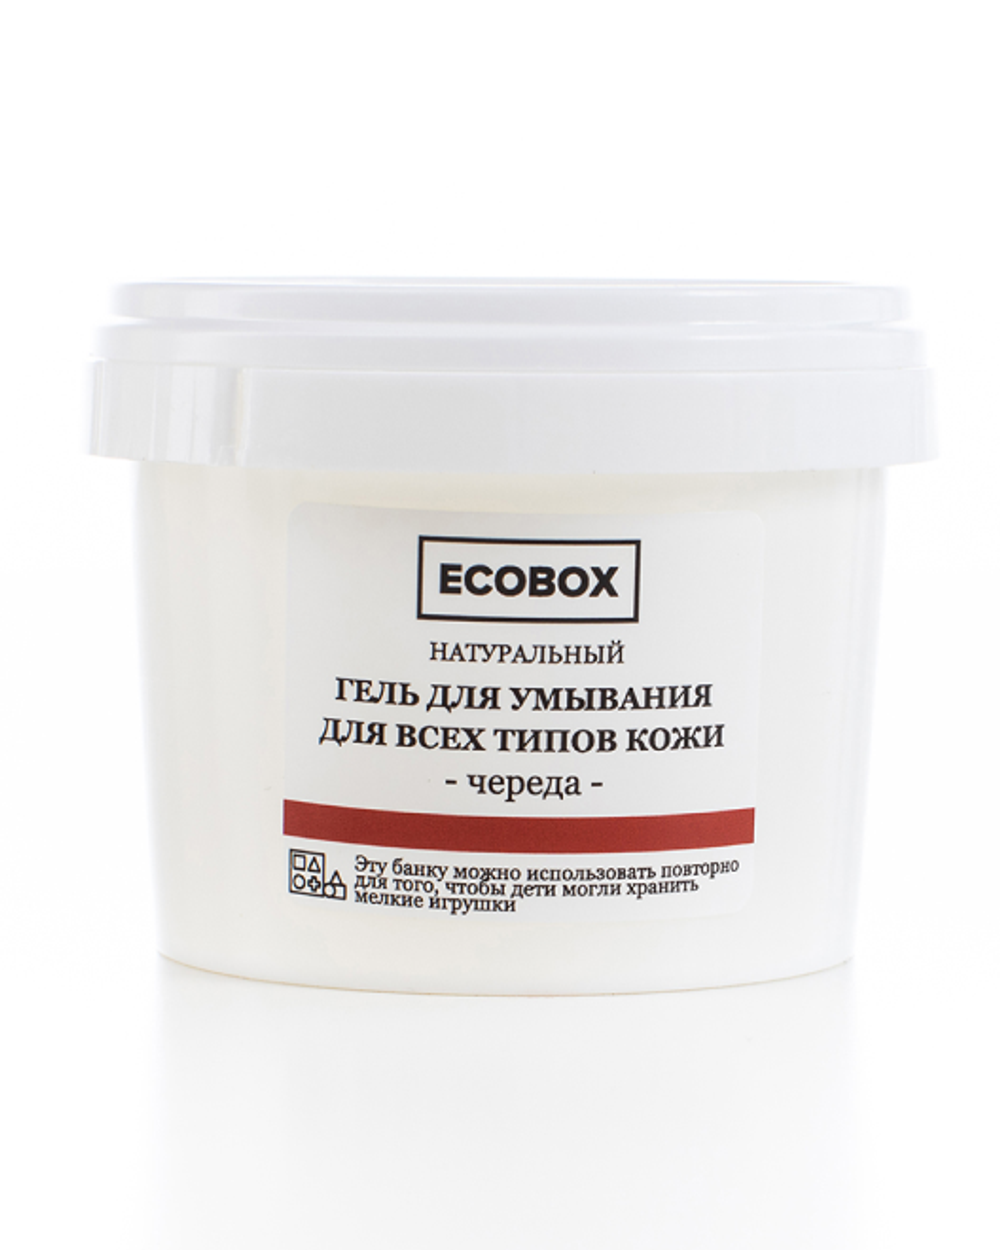 Натуральный гель для умывания для всех типов кожи "Череда" 120 мл Ecobox